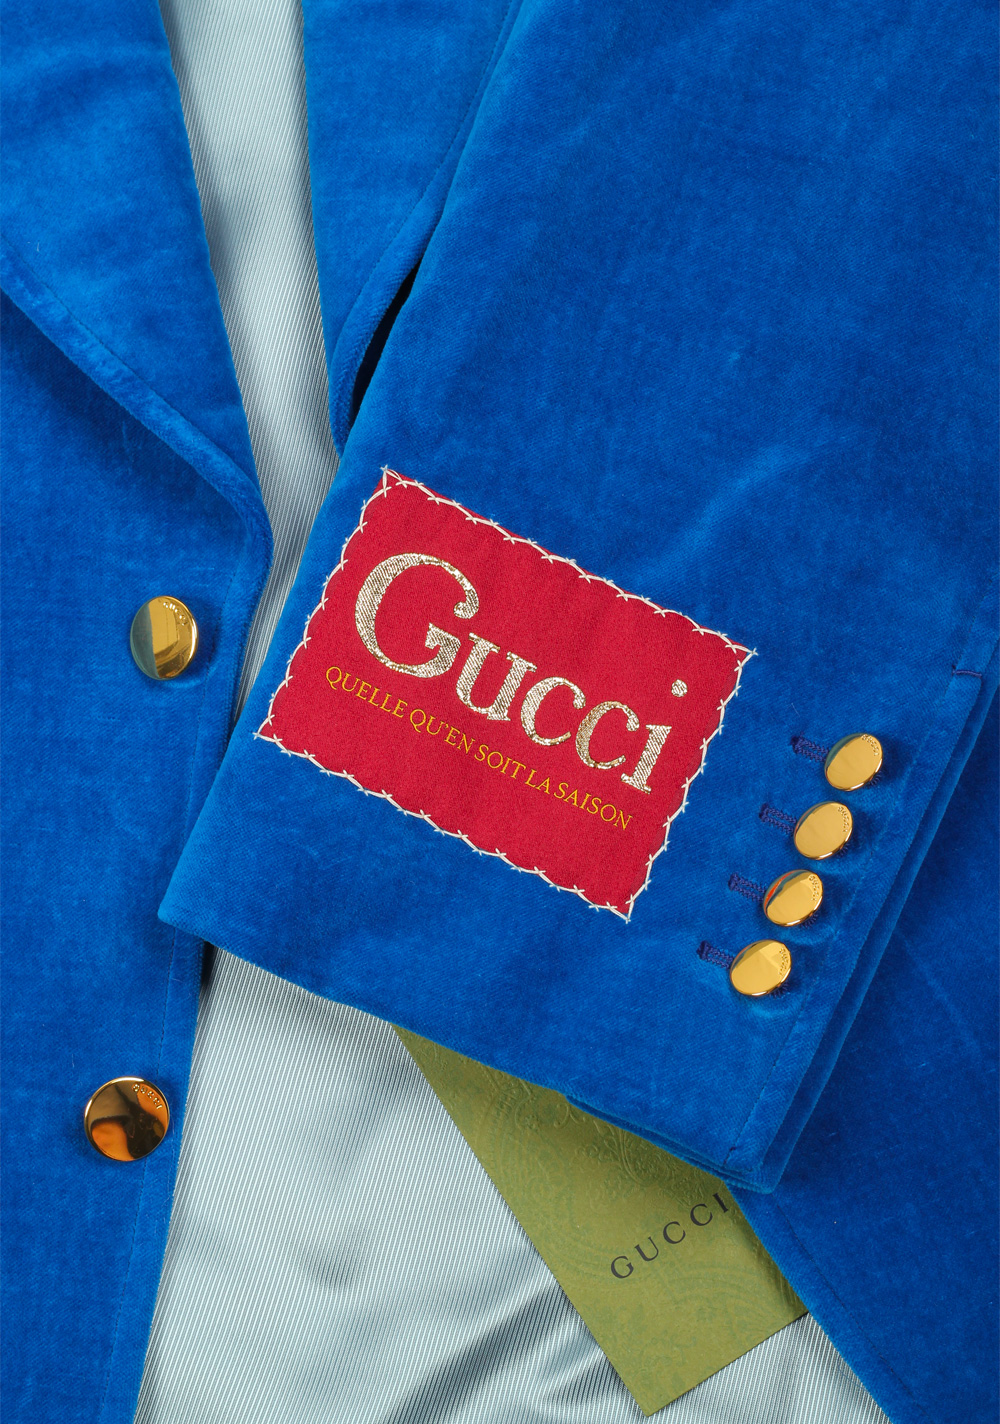 Gucci Blue Velvet Blazer Sport Coat Size 54 / 44R U.S. | Costume Limité